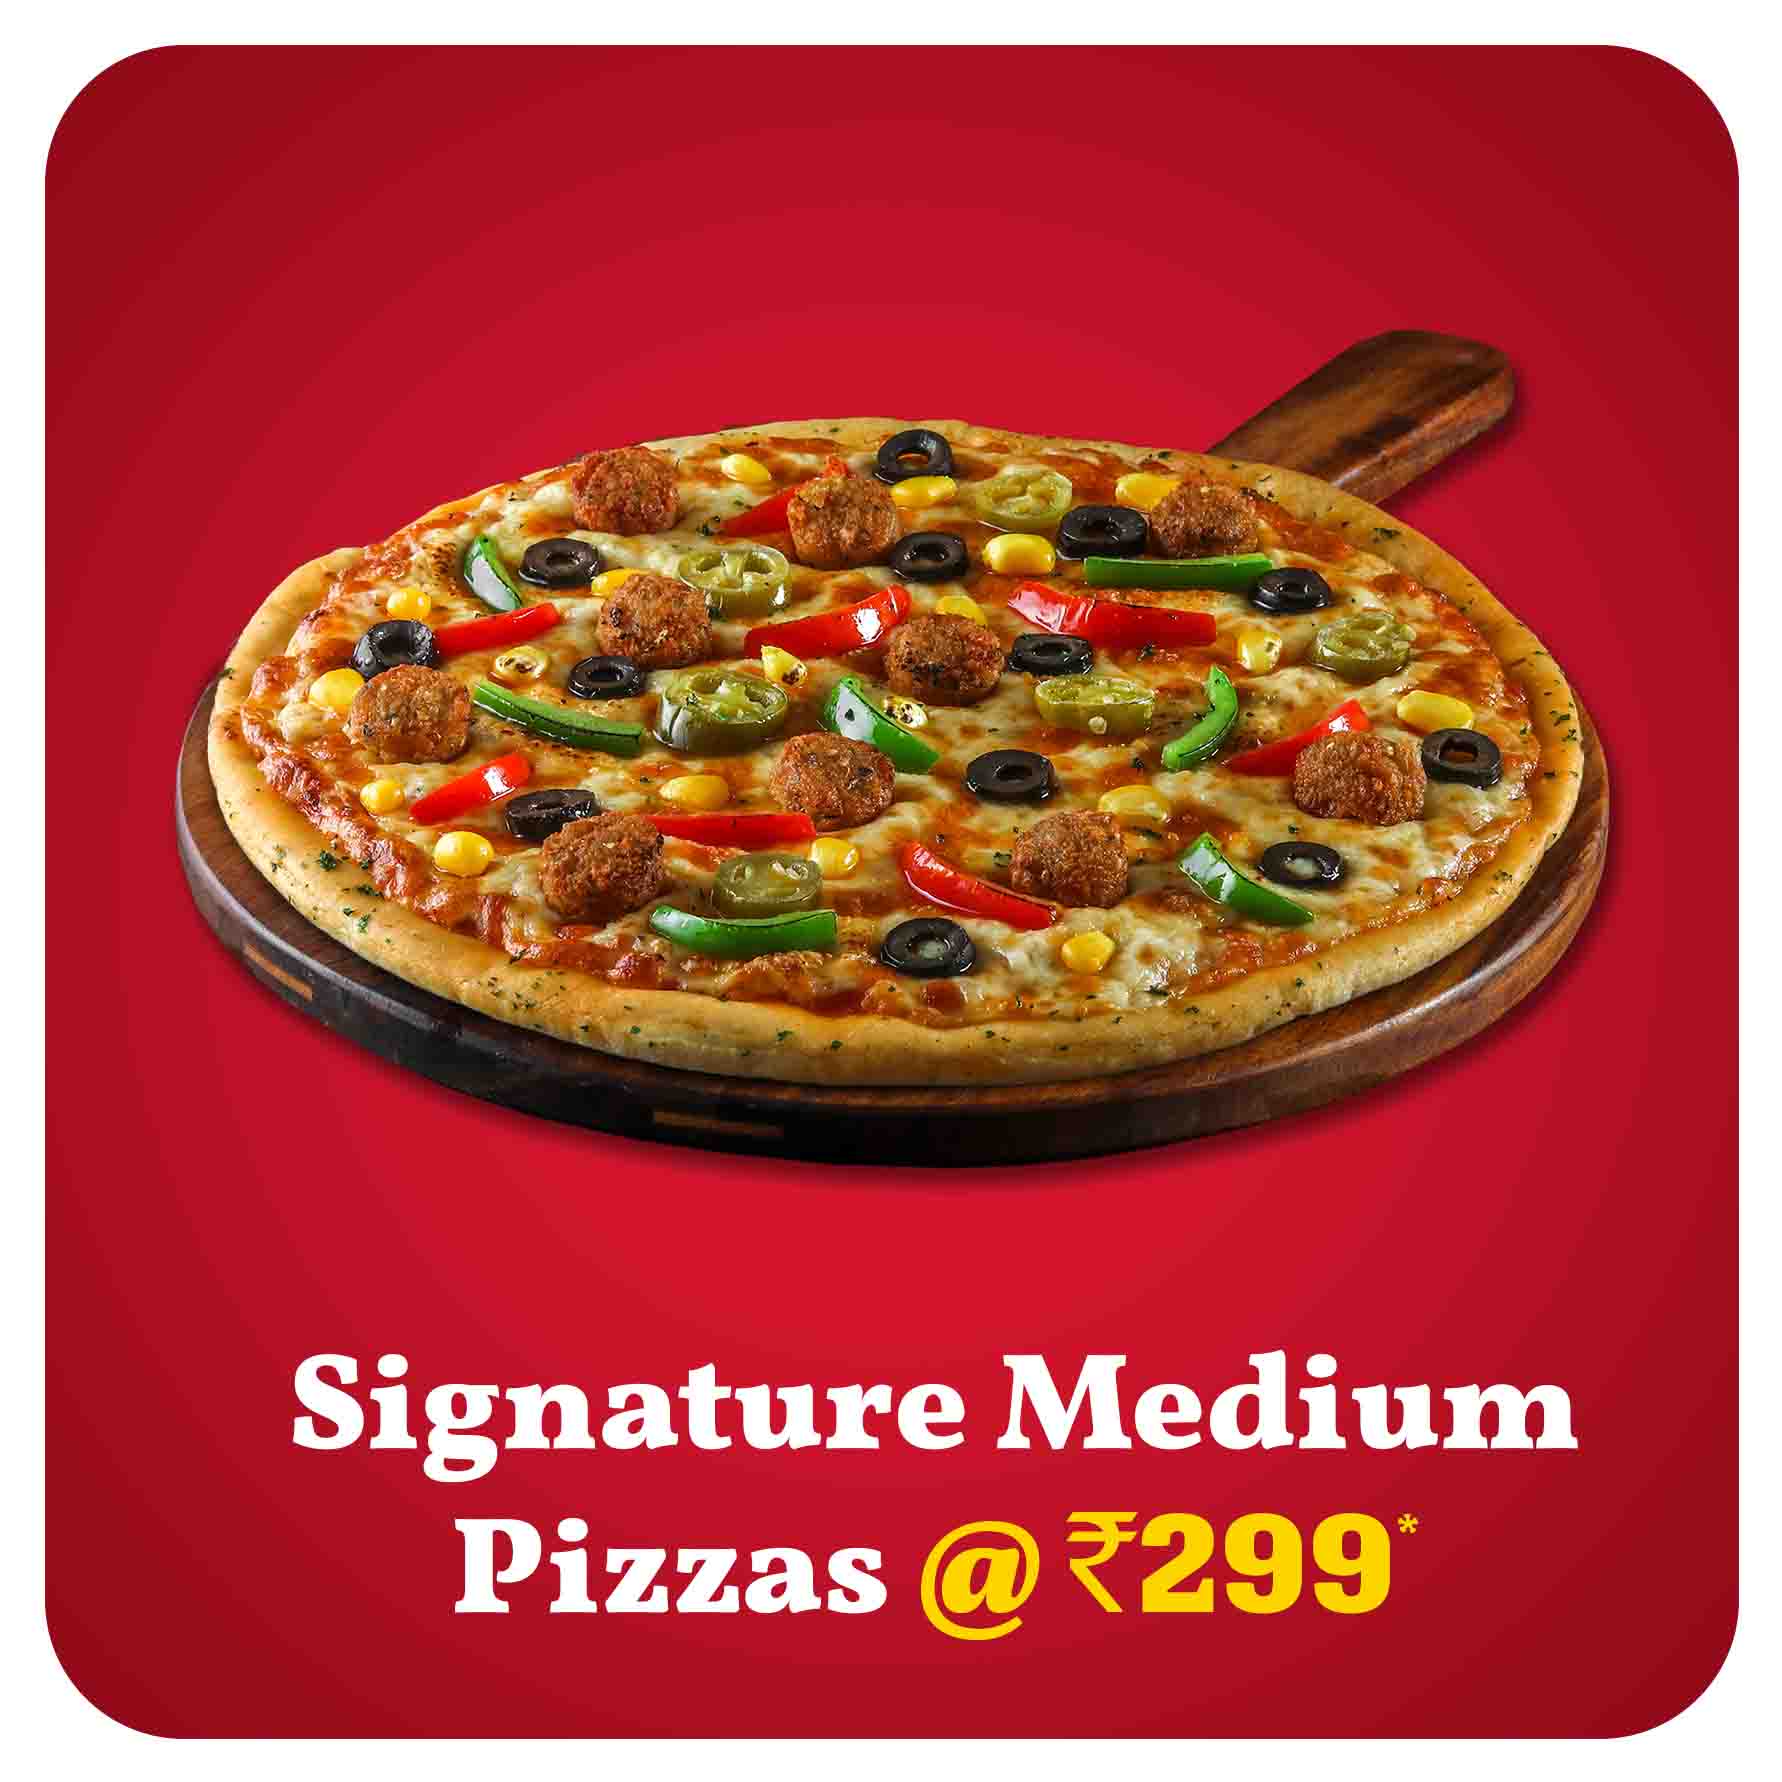 Order Signature Medium Pizzas at 299- Best Price near me